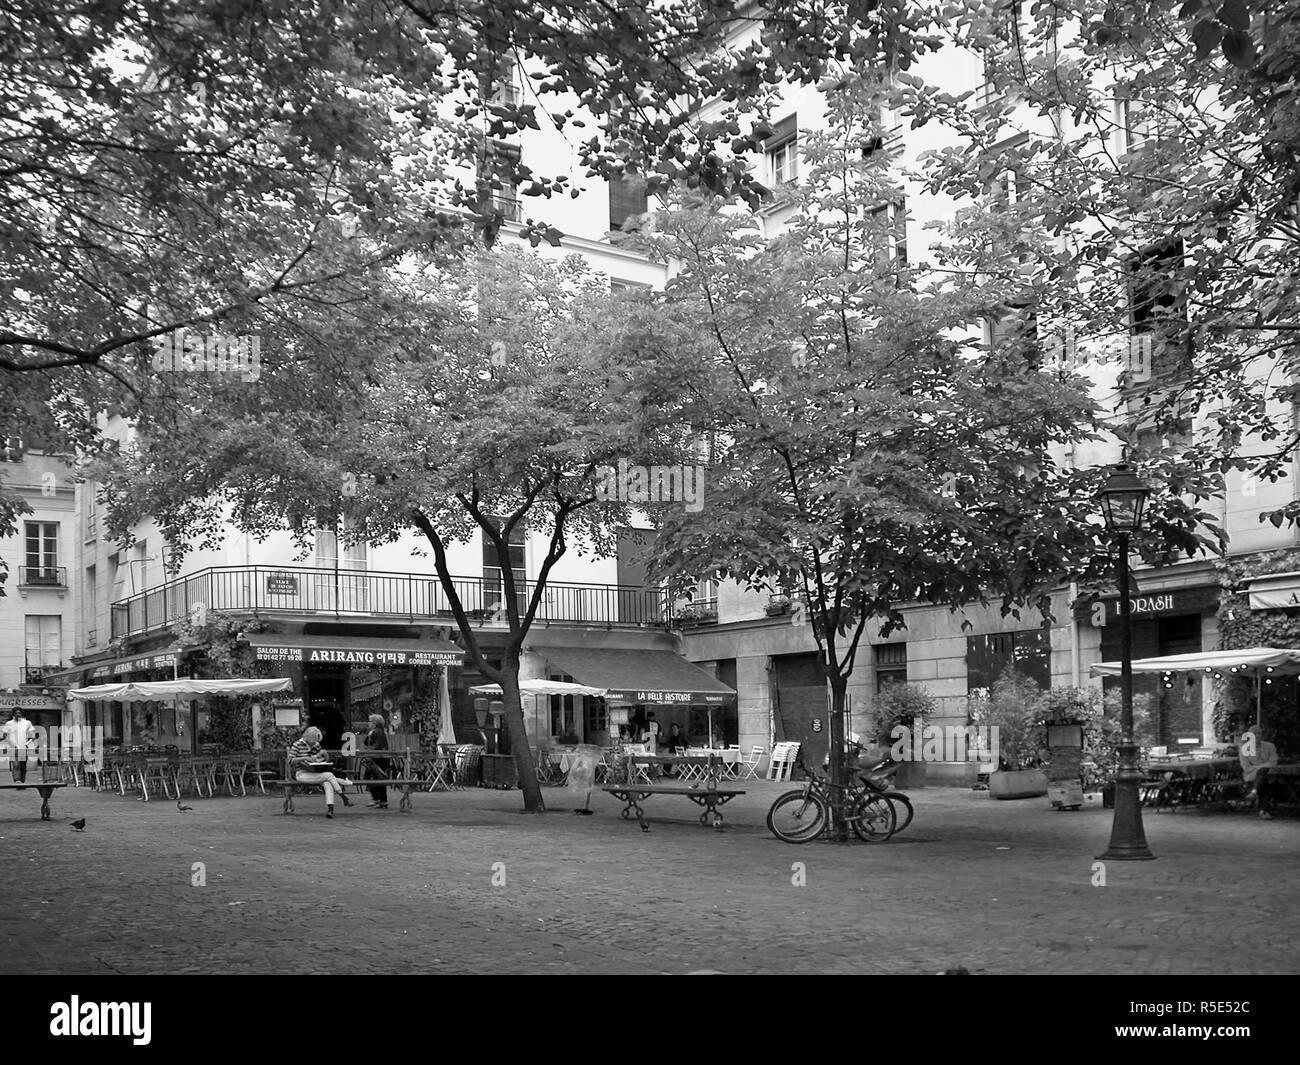 Place du Marché-Sainte-Catherine: biciclette, alberi, cafe, passanti in una tranquilla piazzetta, Marais, Paris, Francia. Versione in bianco e nero Foto Stock